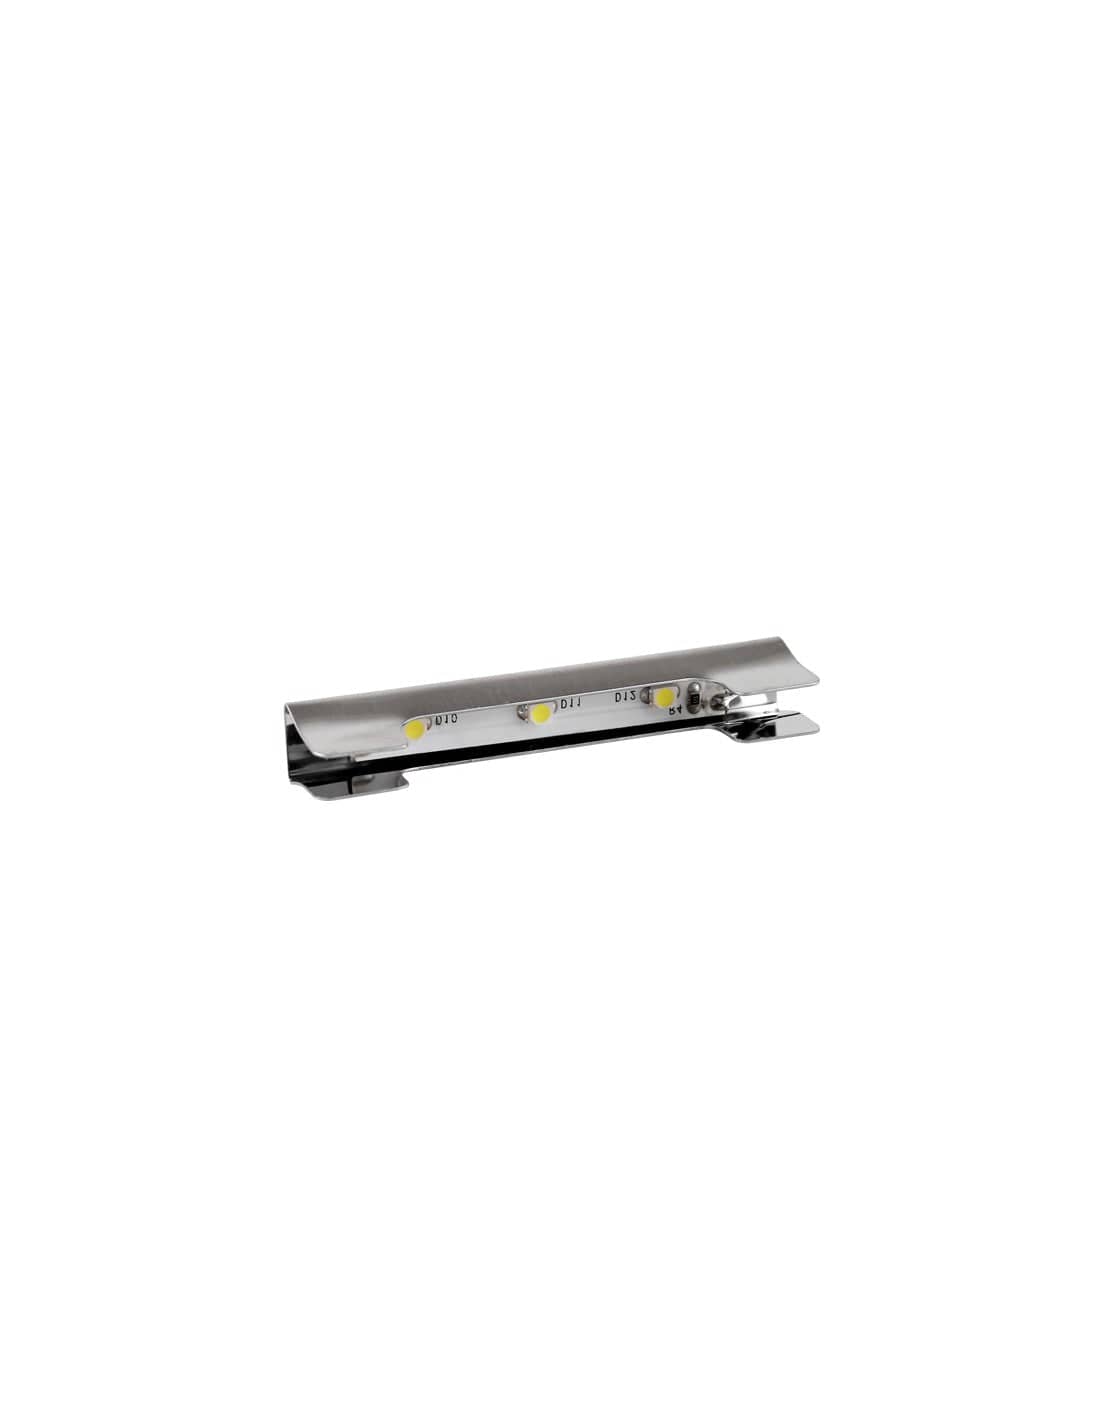 KLIPS - LED metal clip 0.25W Cool White 60K   KLIPS-M-3528-60K-01